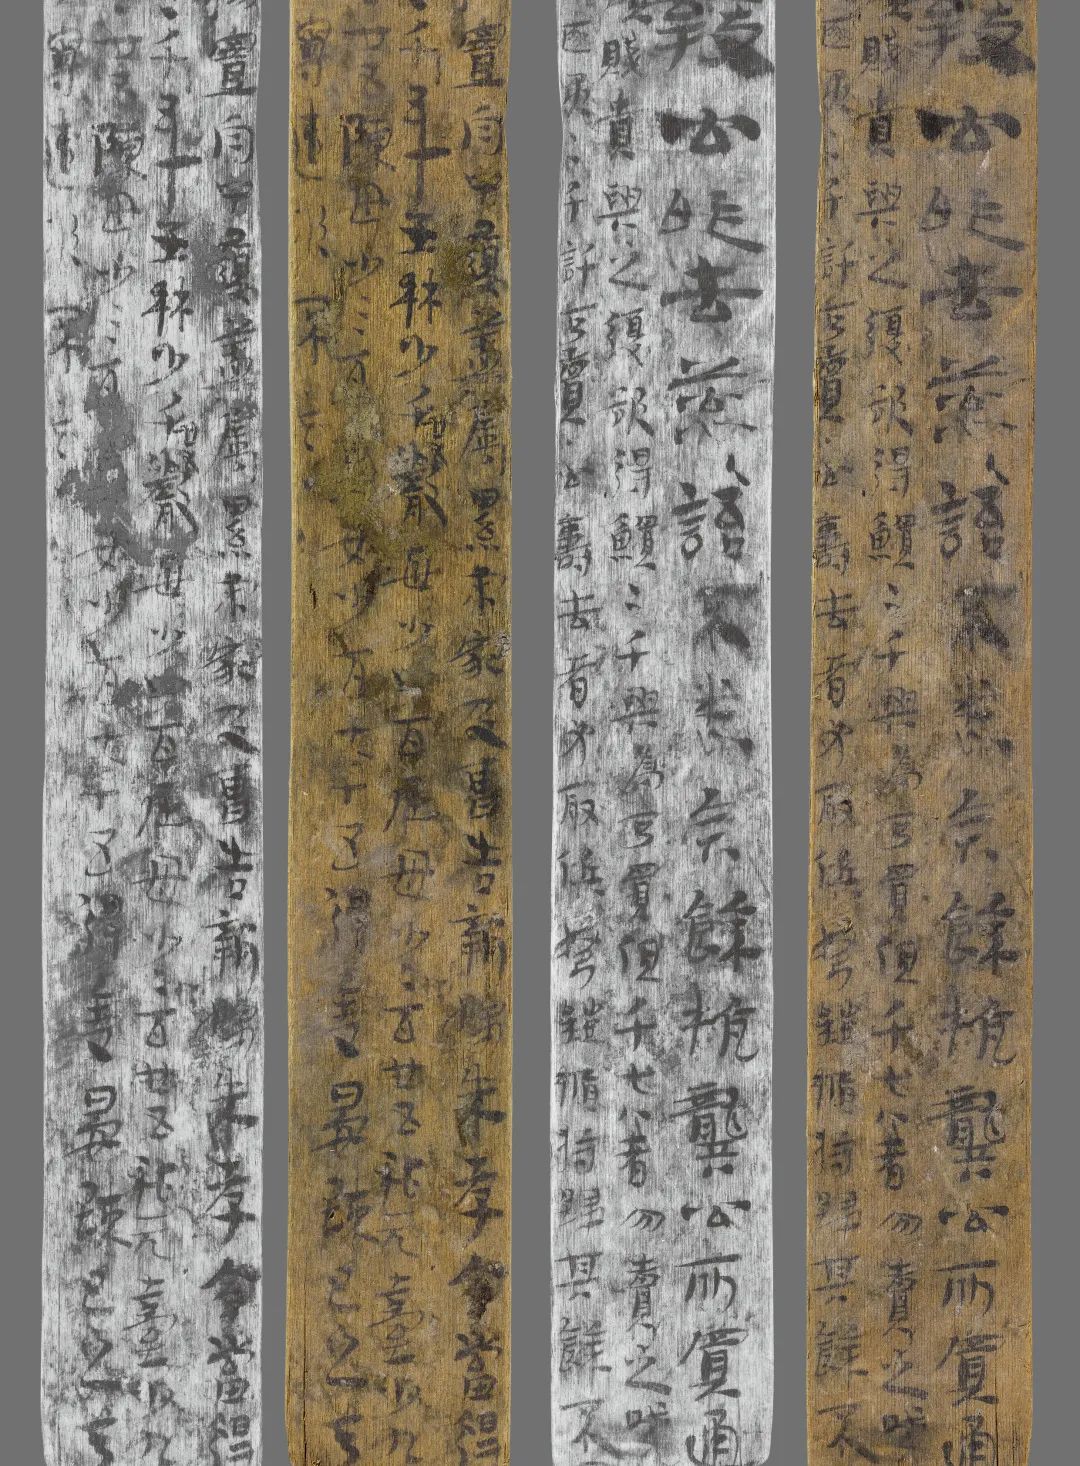 Naskah Kuno di Potongan Bambu Diteliti-Image-2